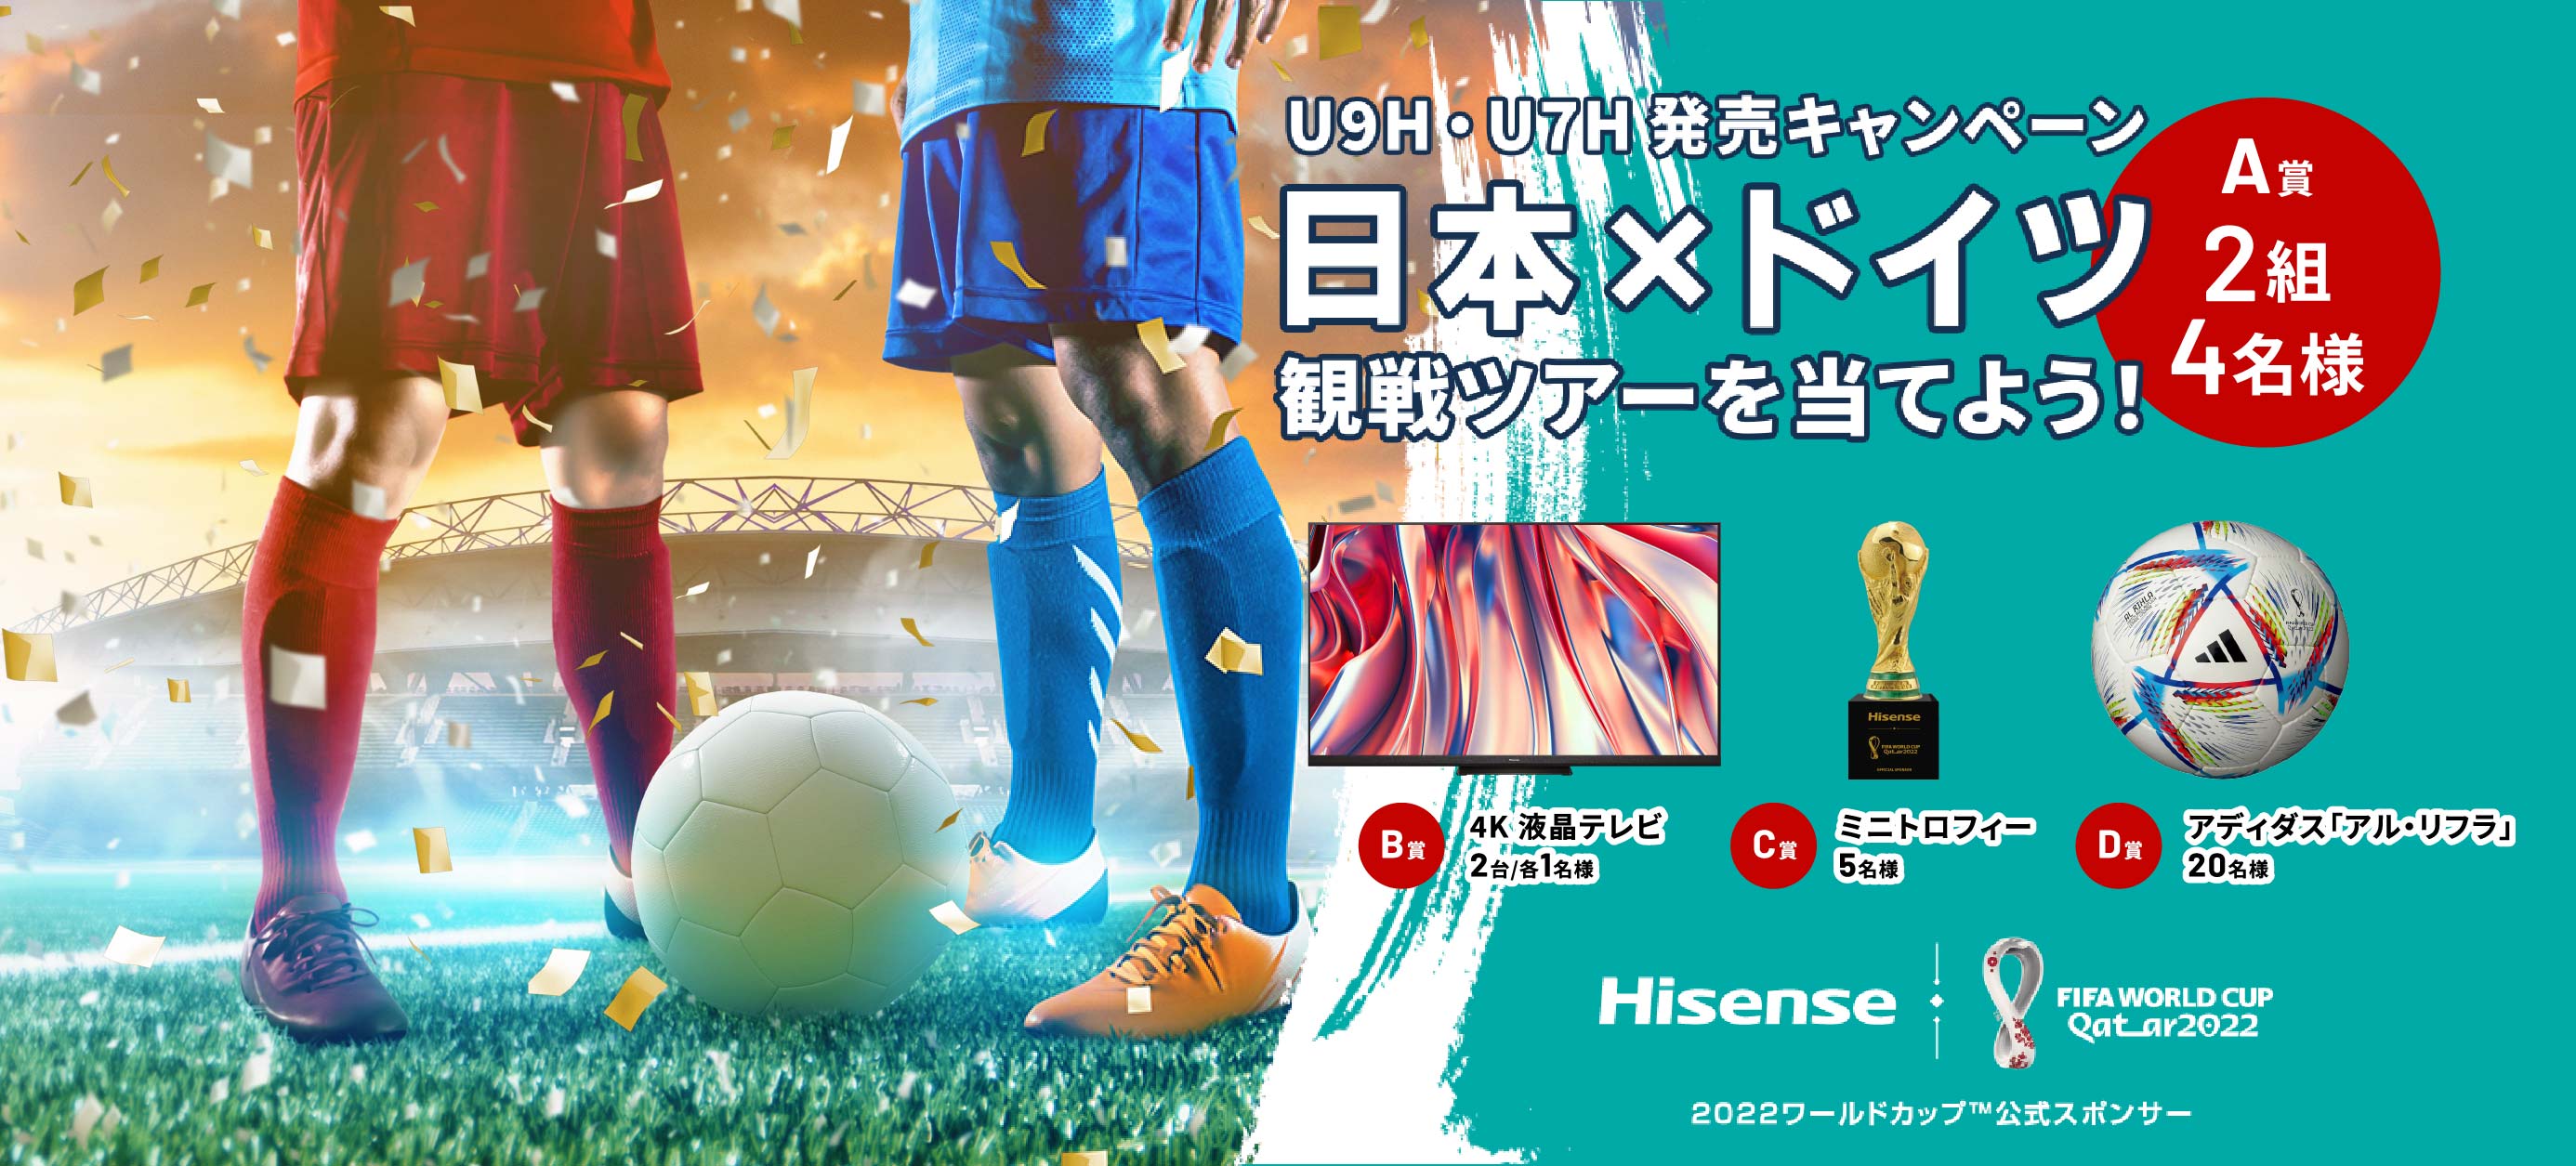 U9H・U7H 発売キャンペーン 日本×ドイツ 観戦ツアーを当てよう！